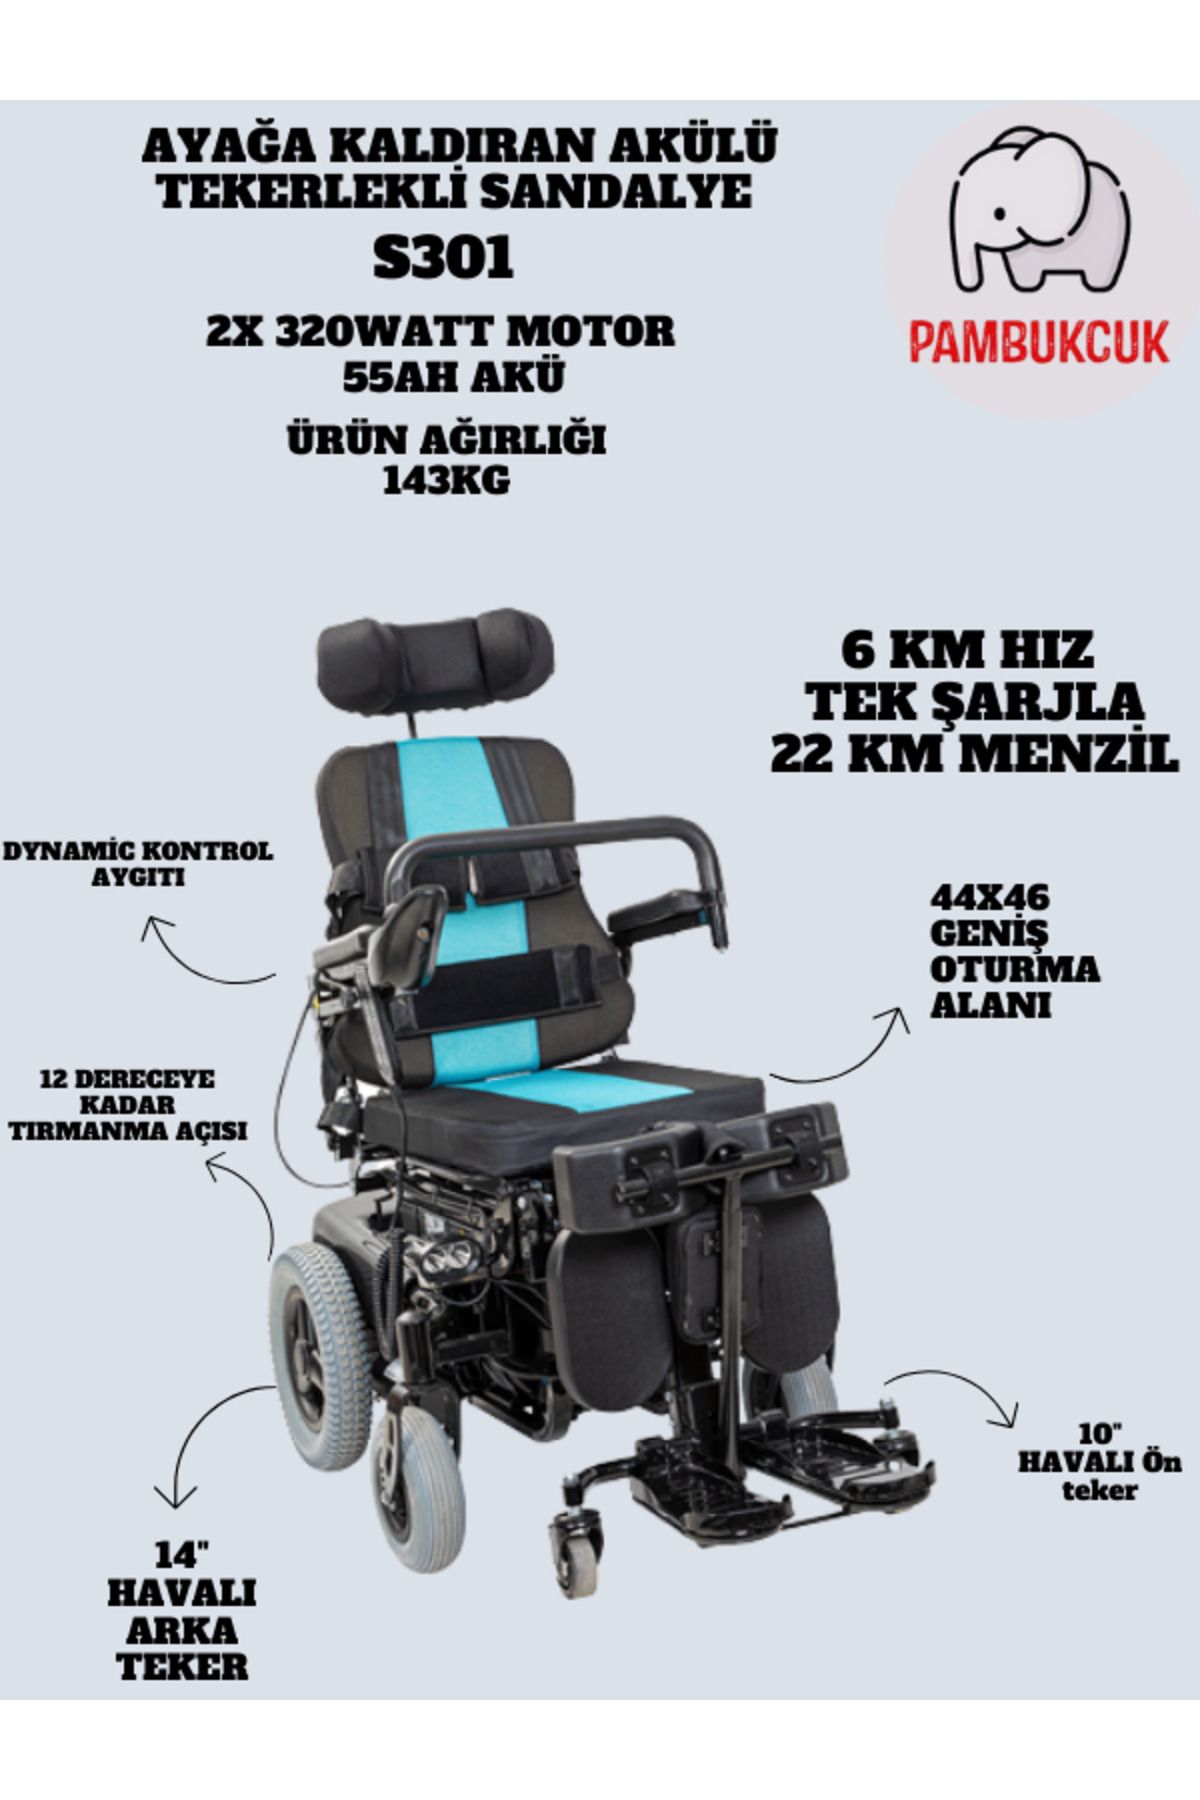 pambukcuk Multi Fonksiyonel Ayağa Kaldıran Akülü Tekerlekli Sandalye S301